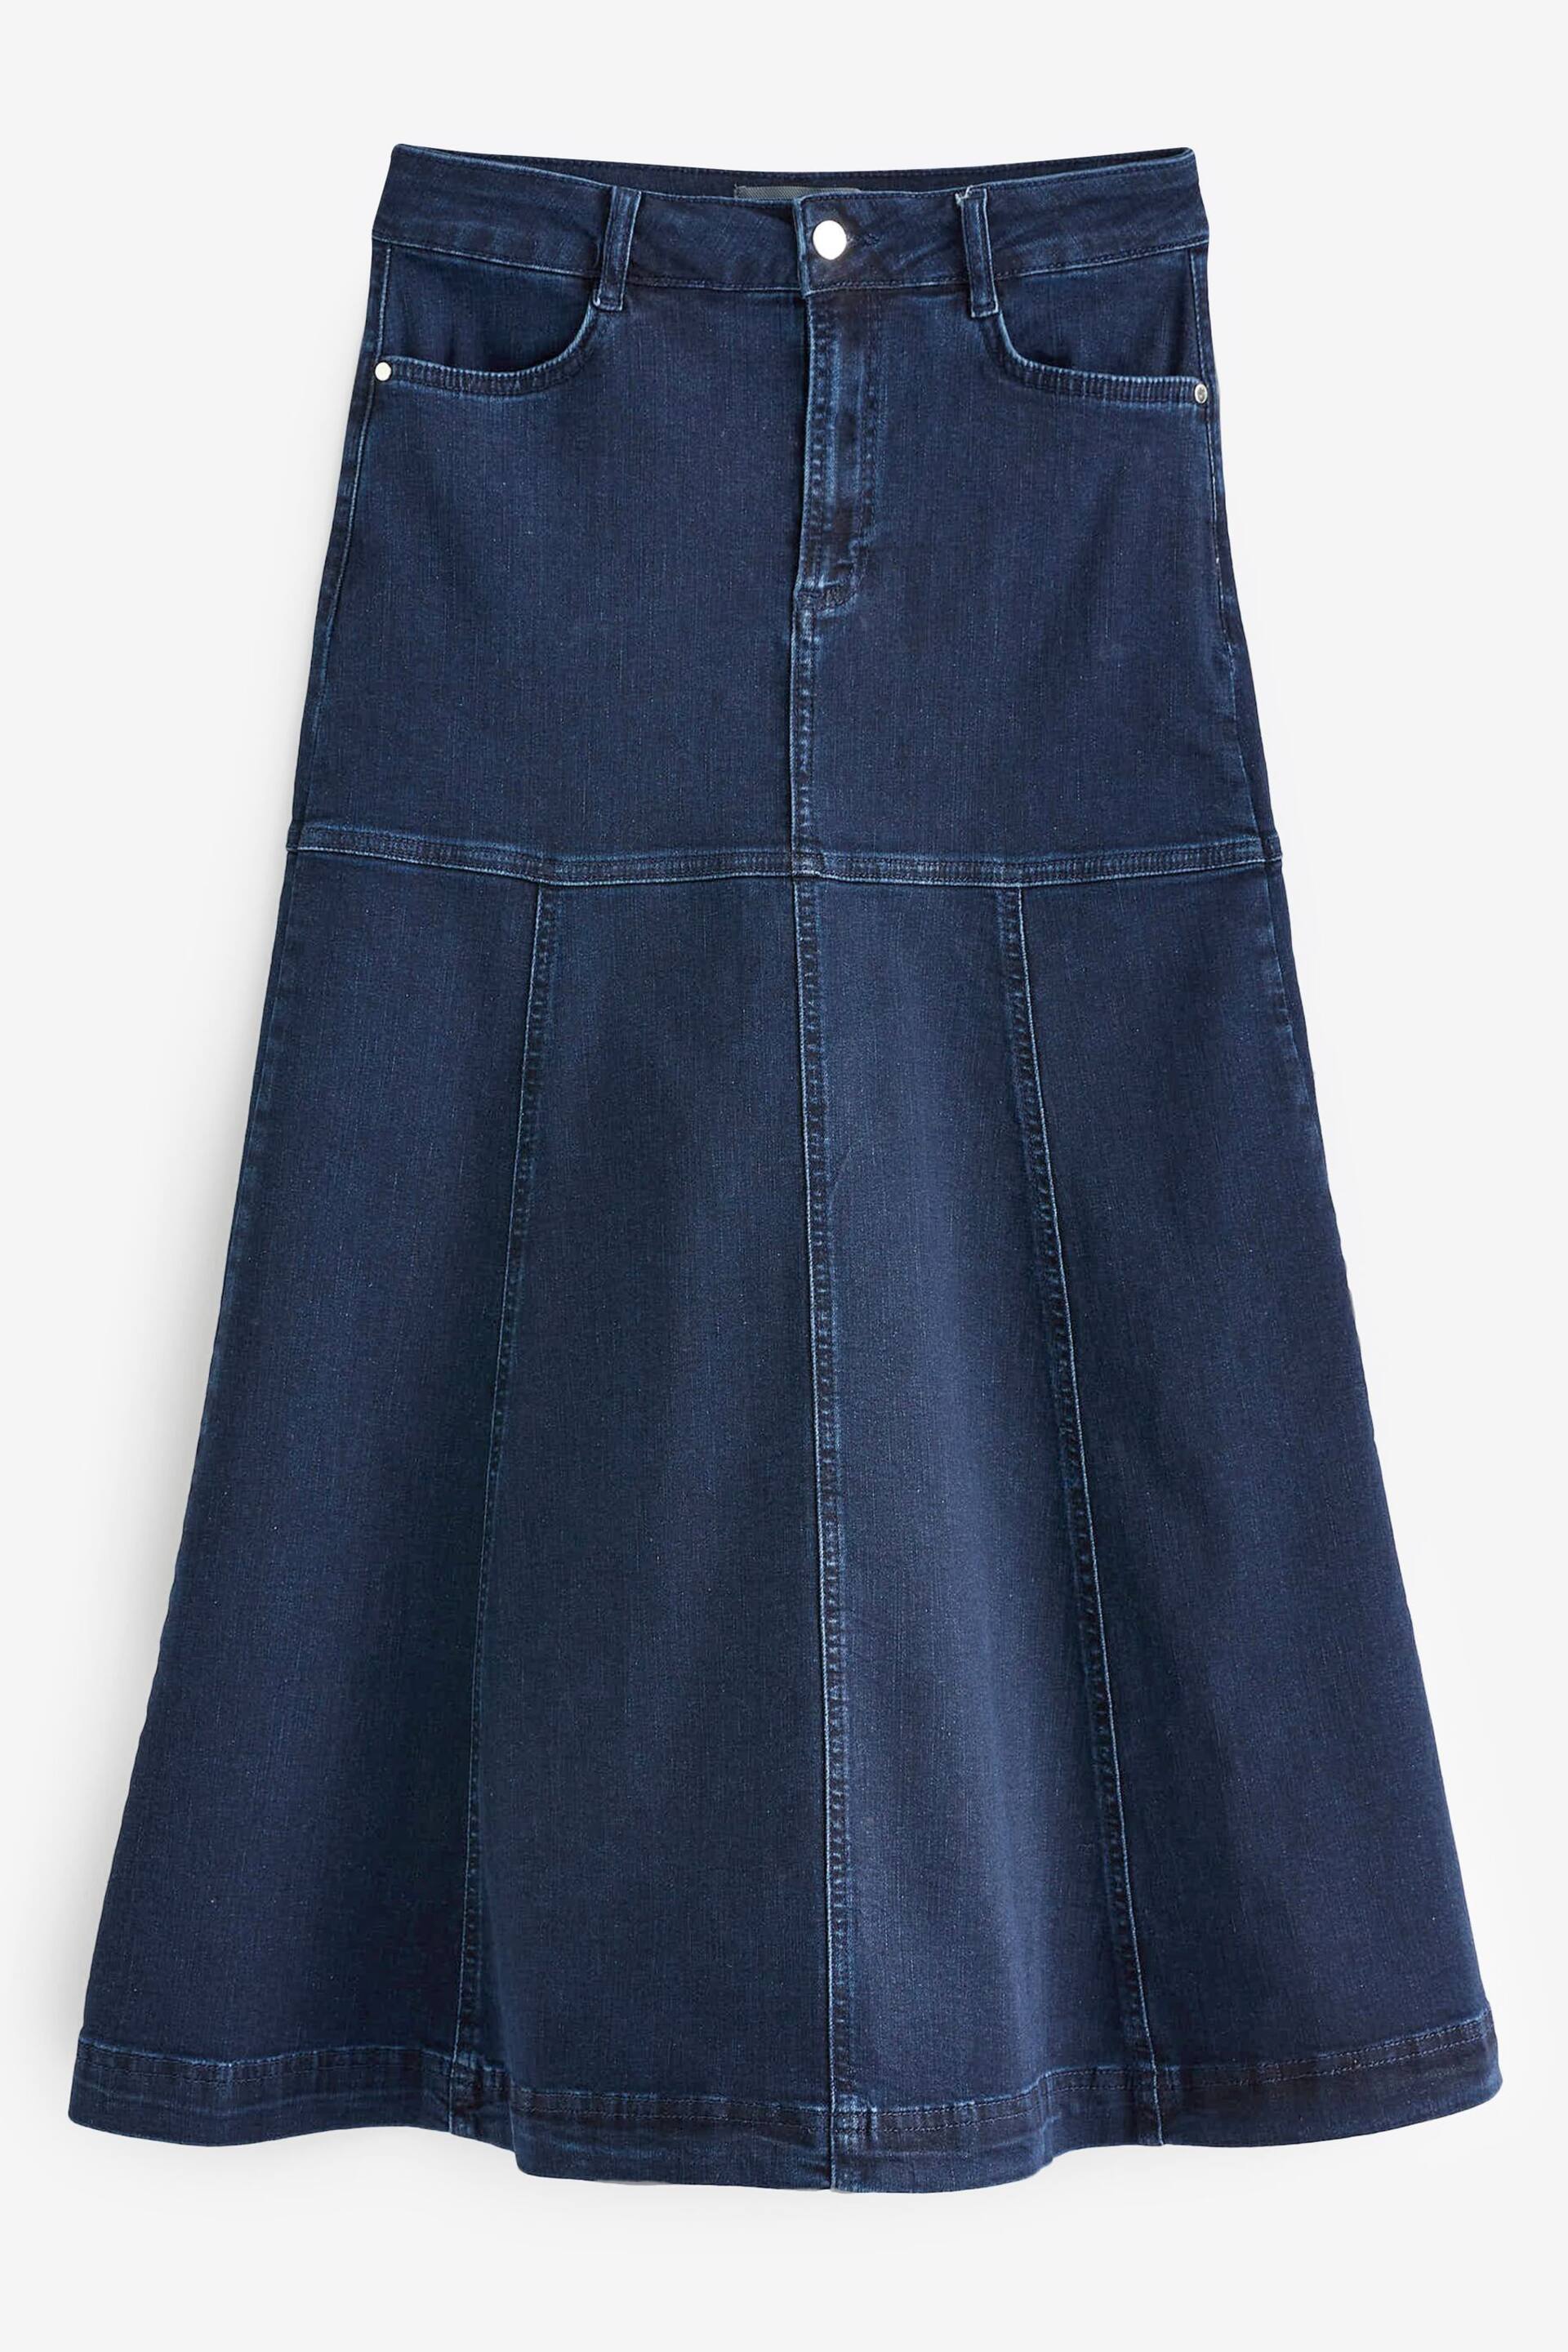 Sosandar Blue Panelled Denim Midi Skirt - Image 5 of 5